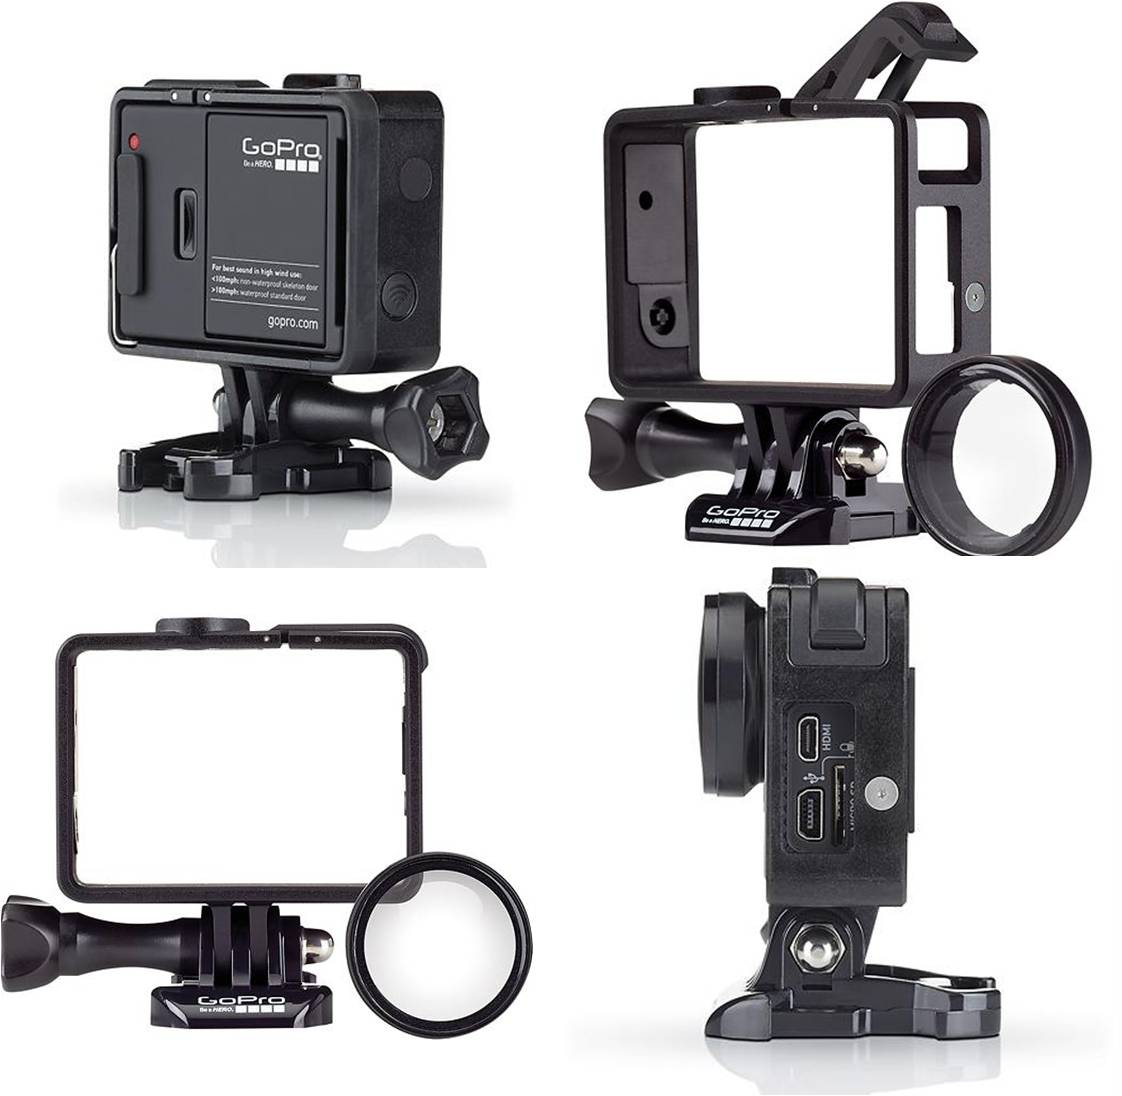 Купить улучшенное самое маленькое и лёгкое крепление для камеры GoPro HERO 4 / HERO3+ / HERO3 Цена, обзор, отзывы